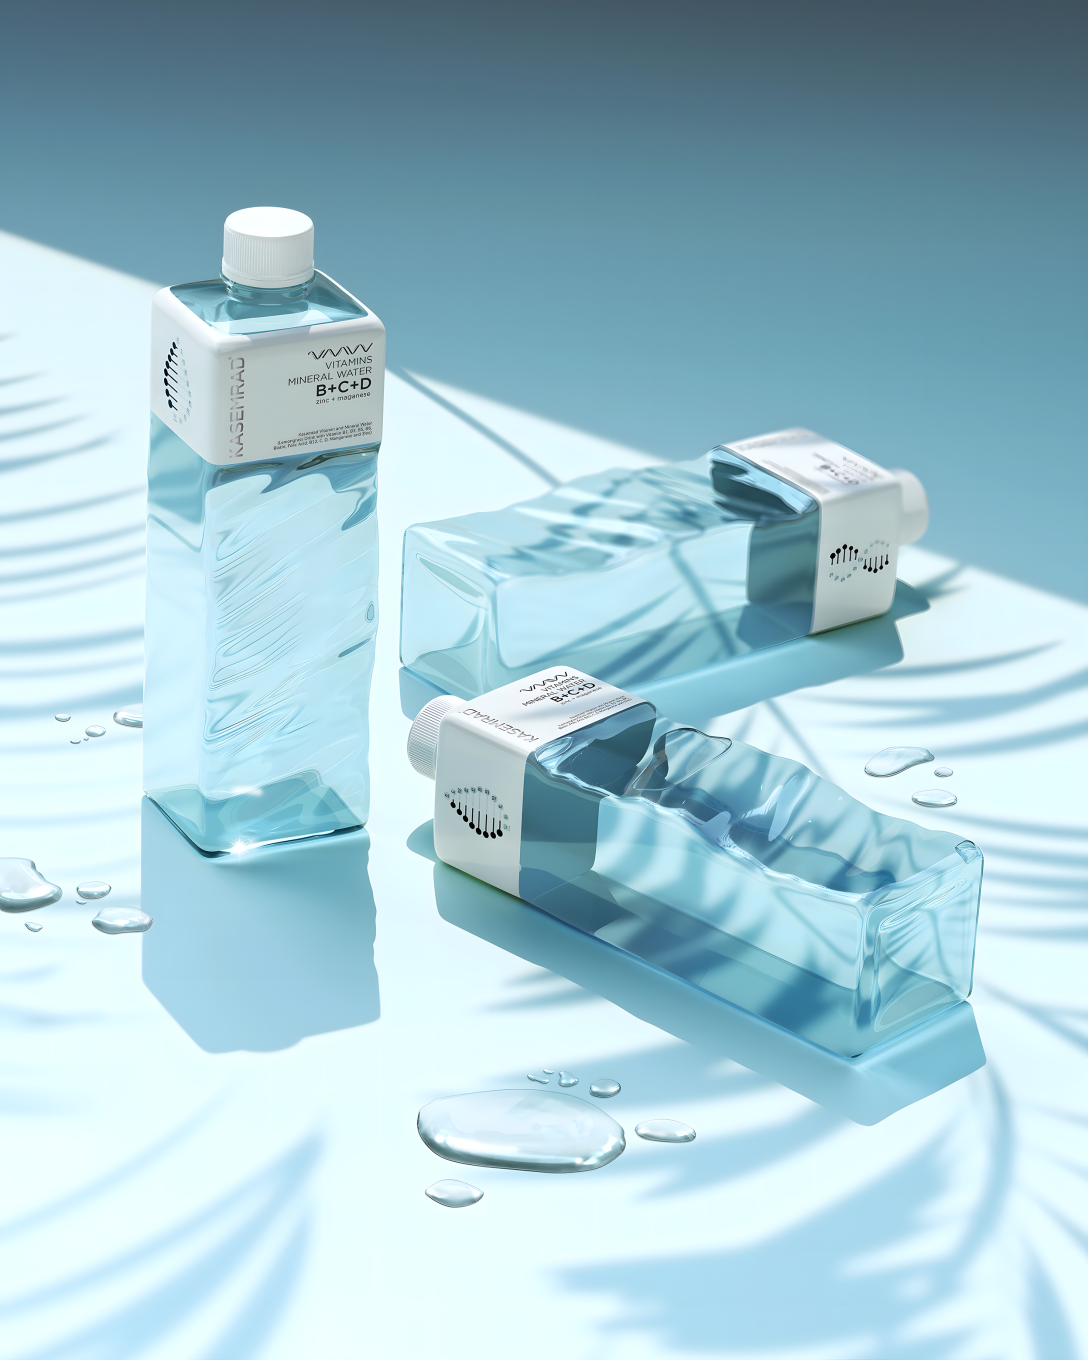 创意饮料包装设计| 水包装设计| 矿泉水包装设计公司